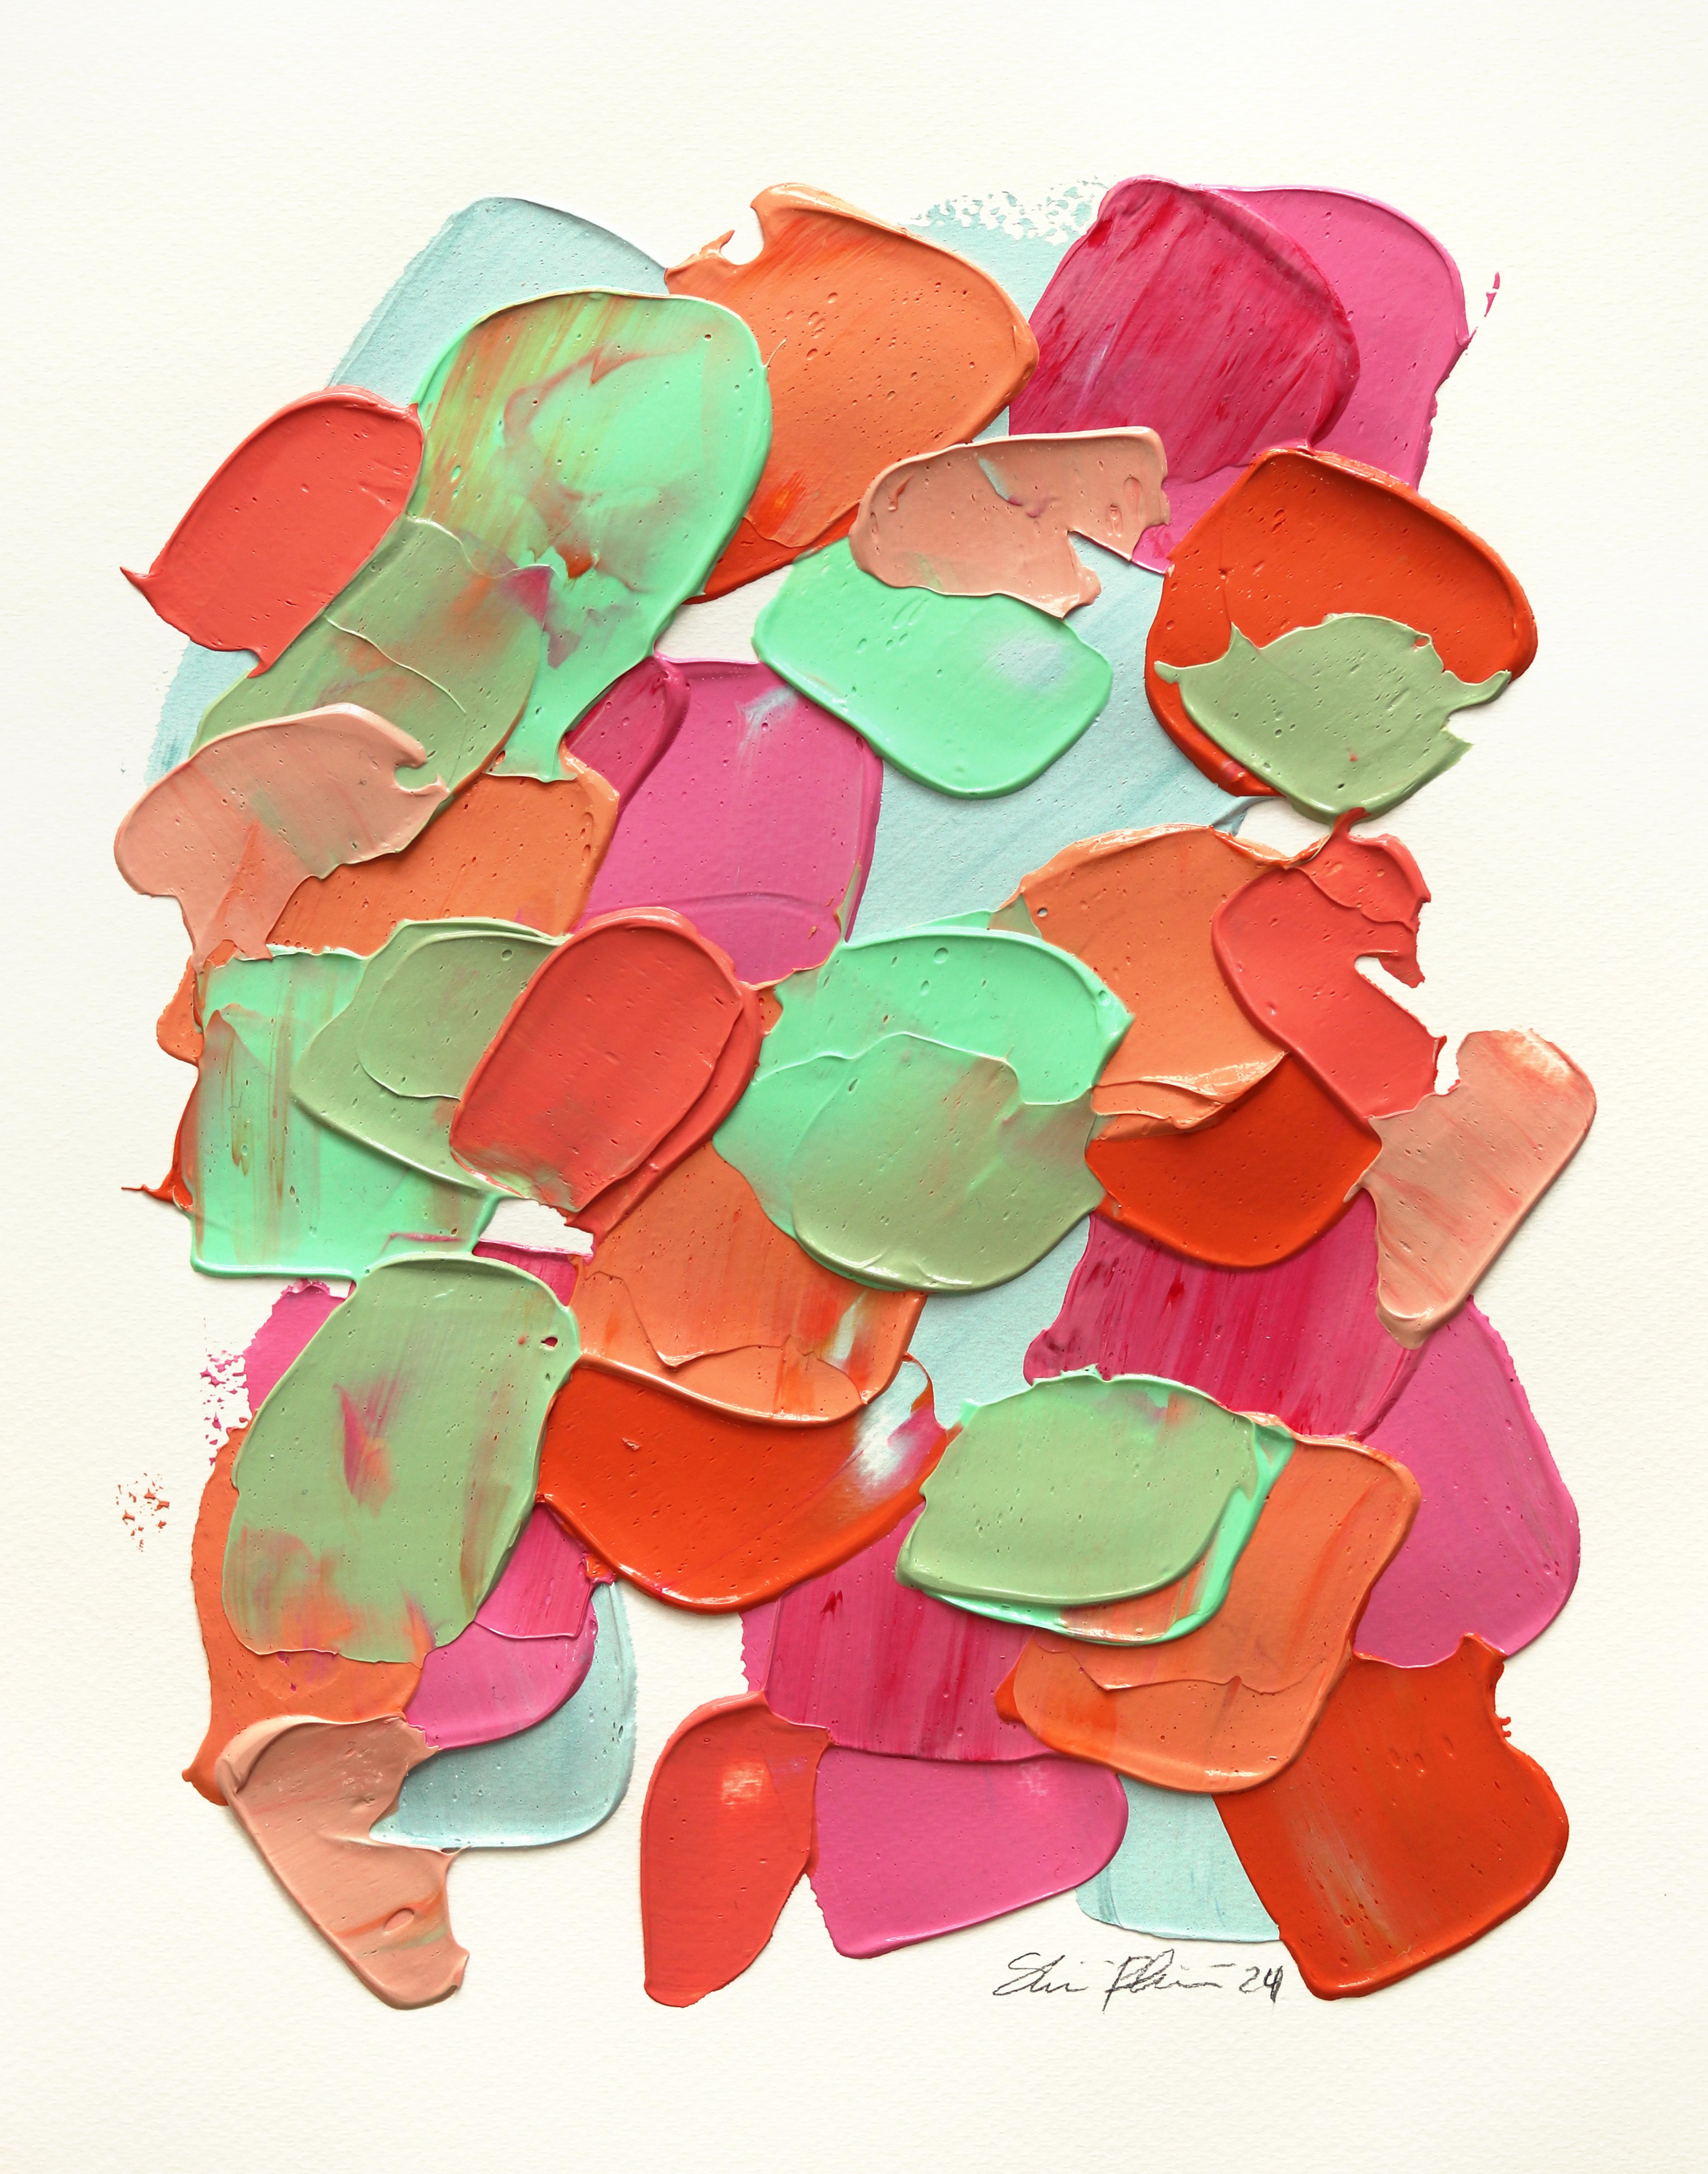 Teinte vibrante  -  Peinture abstraite, texturée et minimaliste colorée sur papier - Art de Shiri Phillips